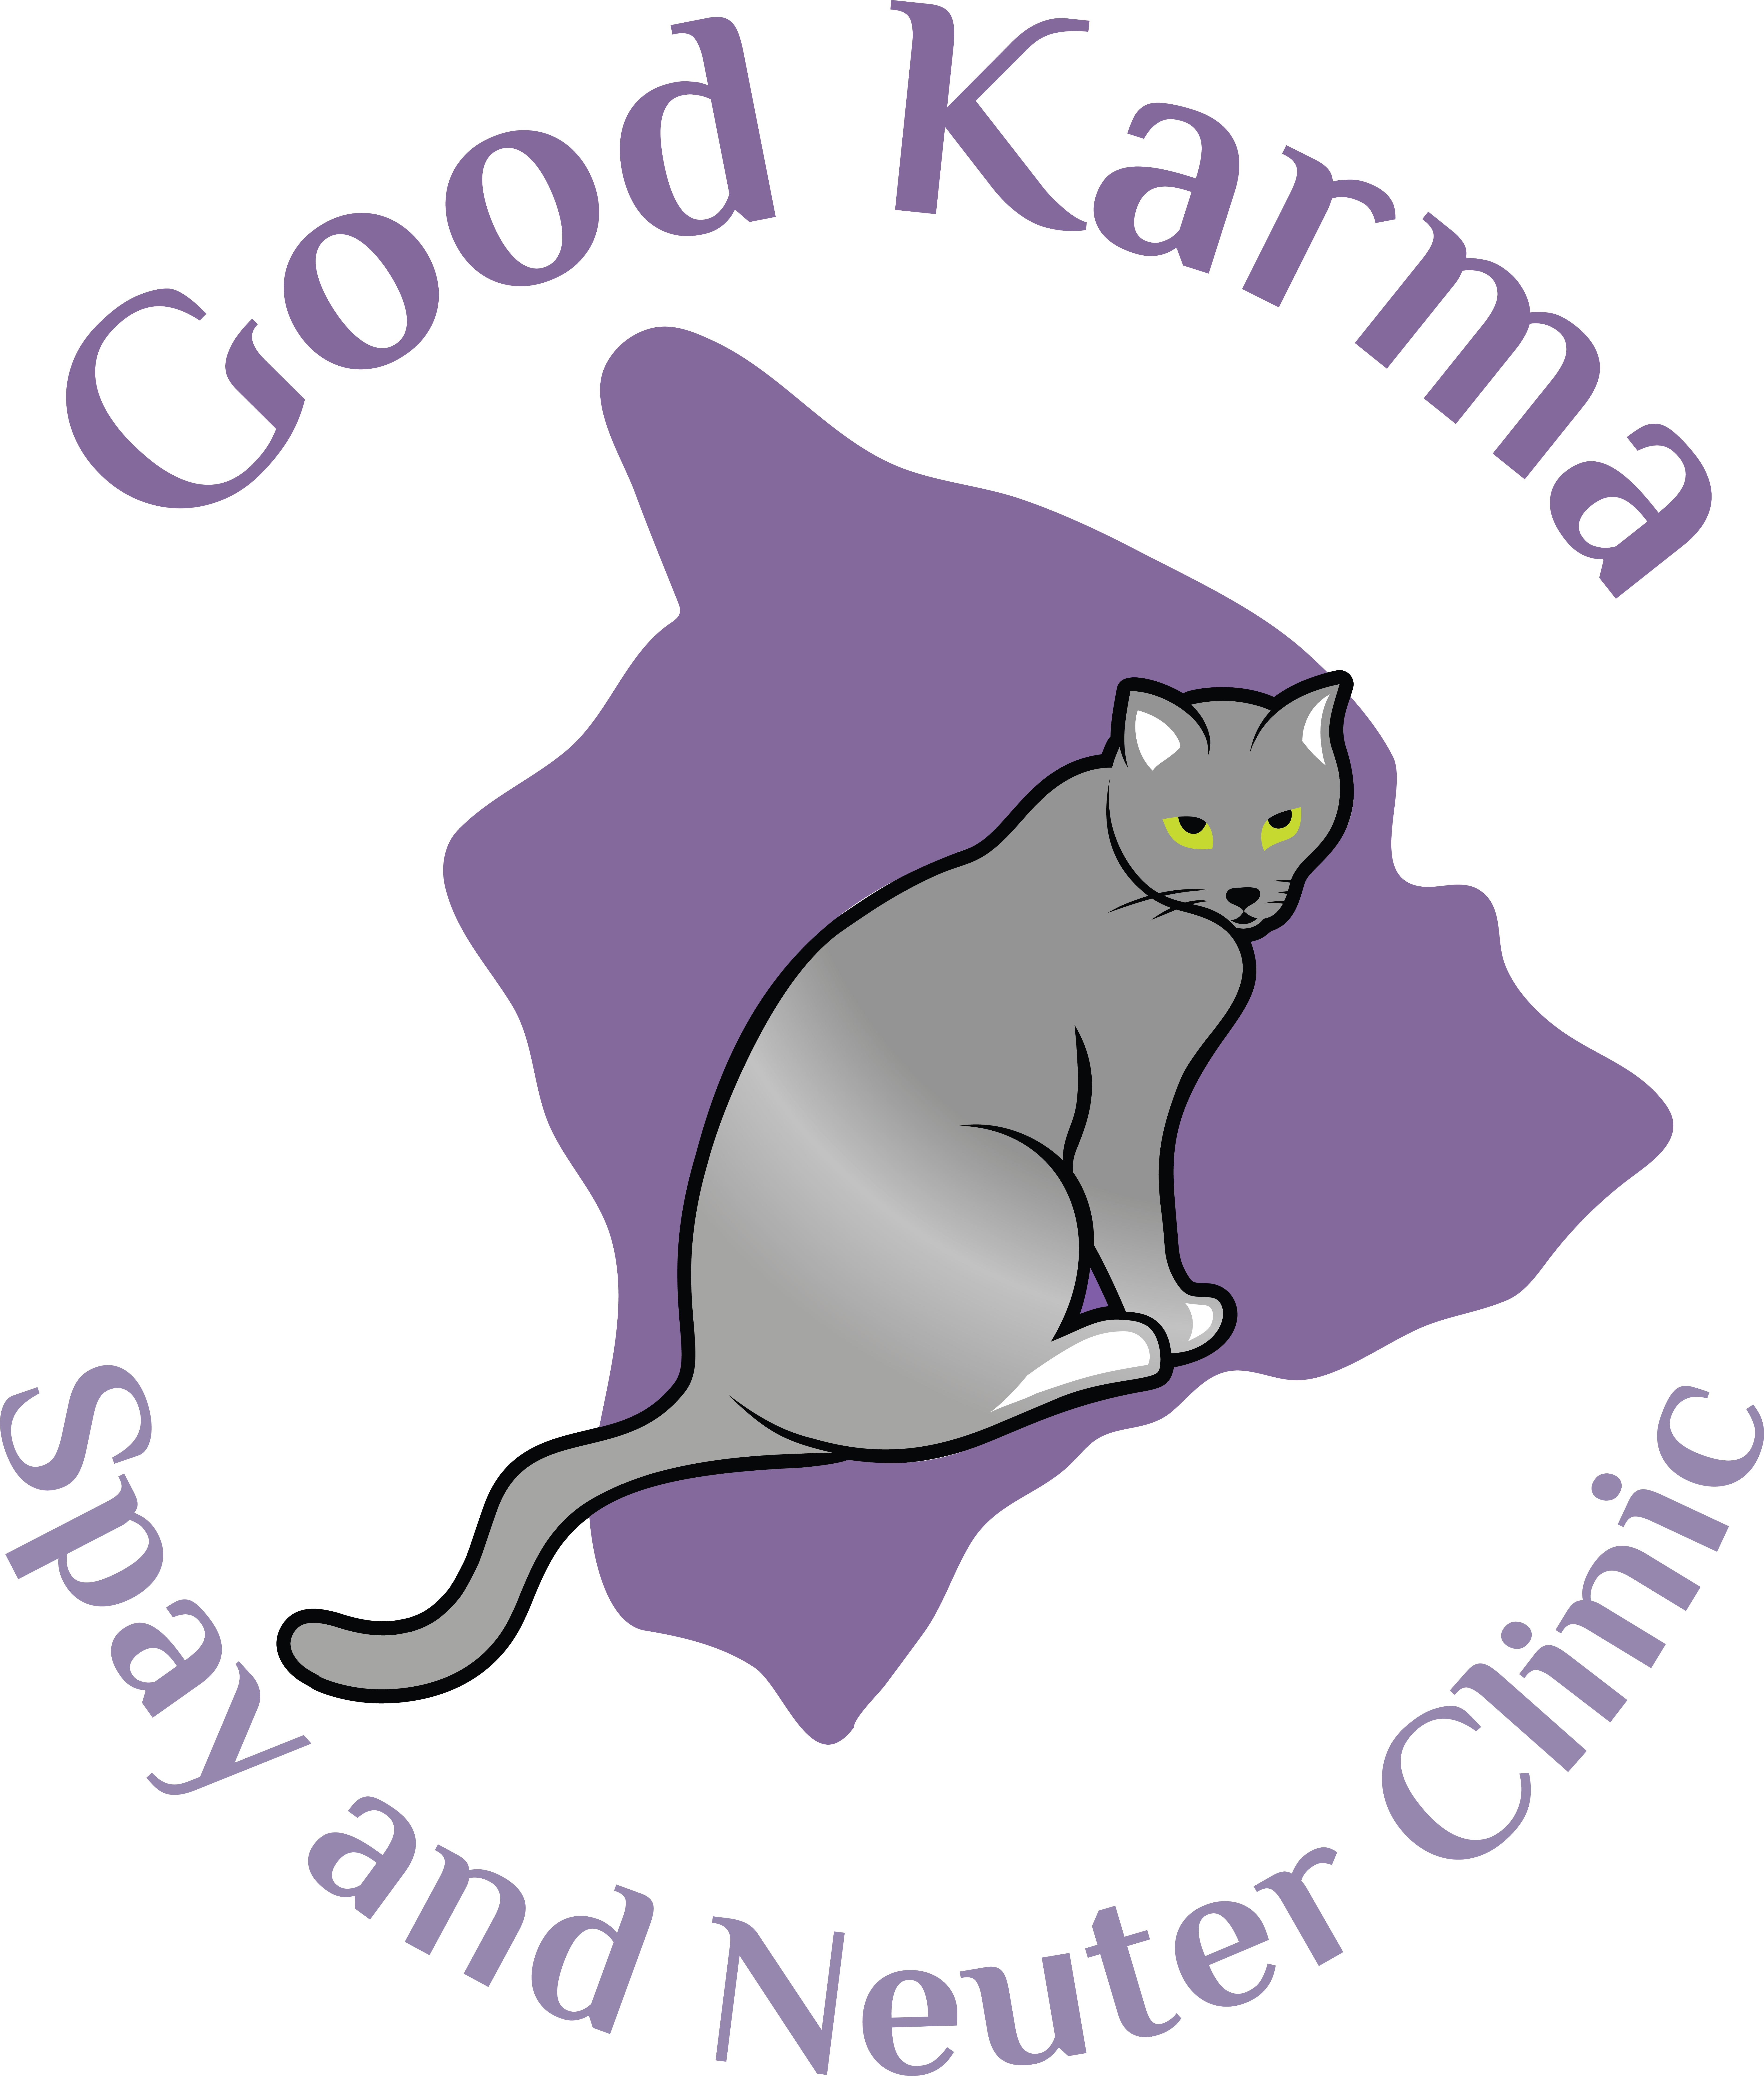 Good Karma Spay and Neuter Clinic, LLC